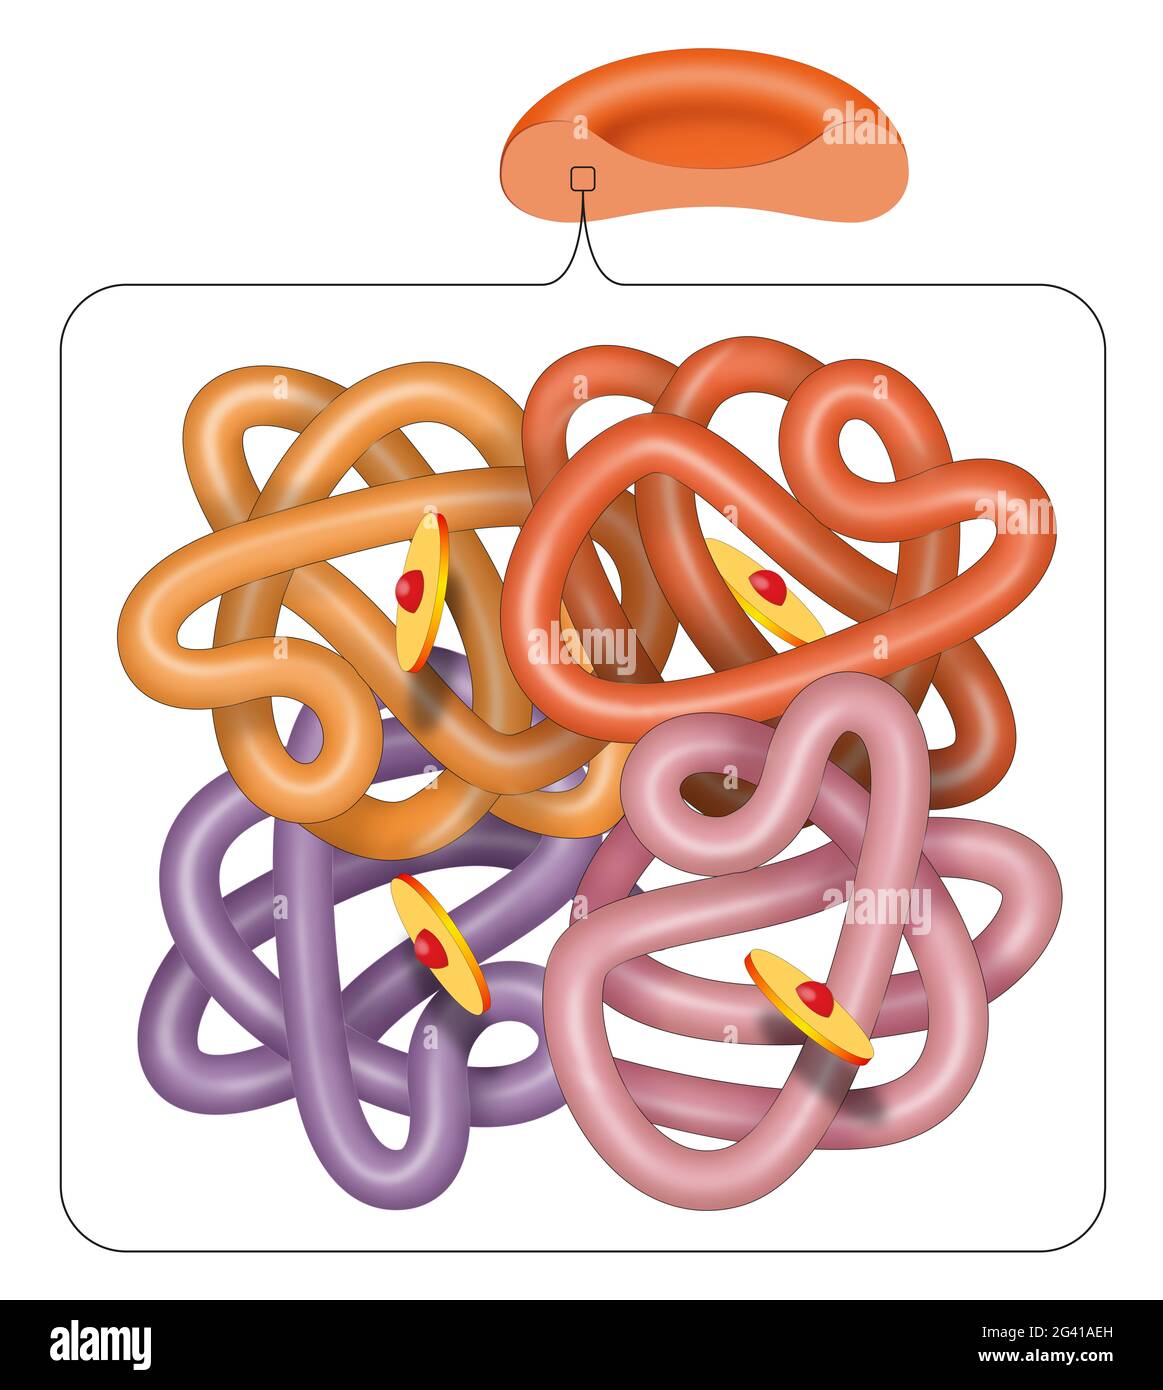 Structure de la molécule d'hémoglobine (hémoglobine) Banque D'Images